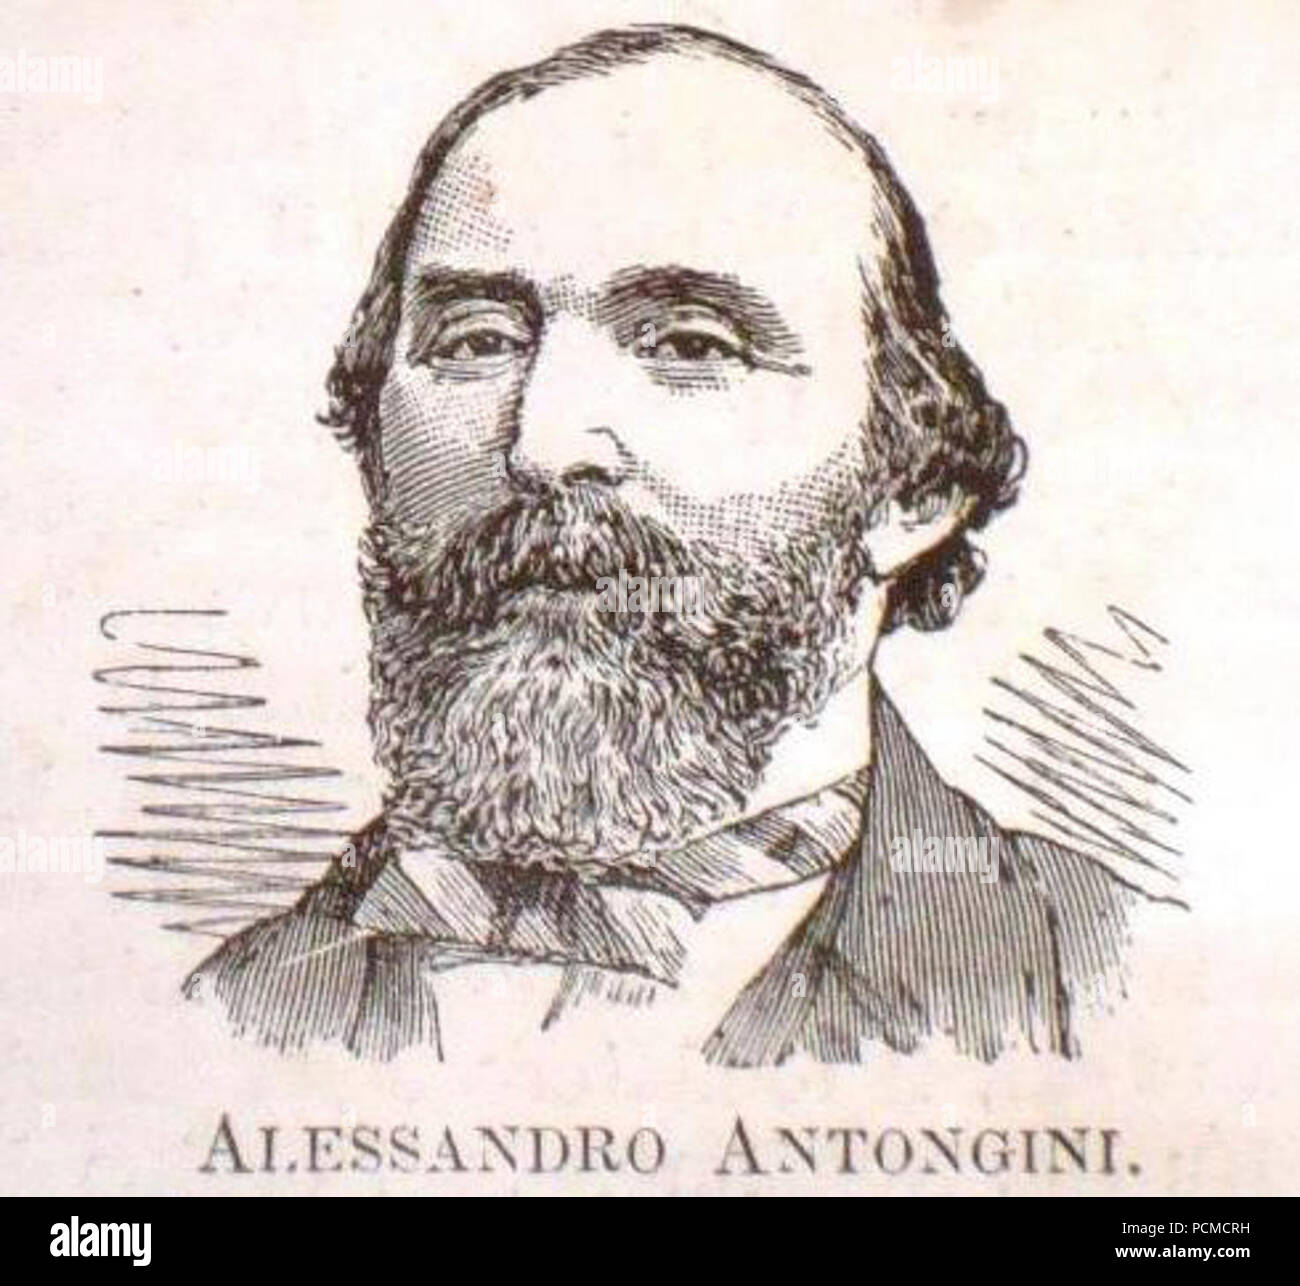 Alessandro Antongini disegno rivista fine 1800. Stock Photo